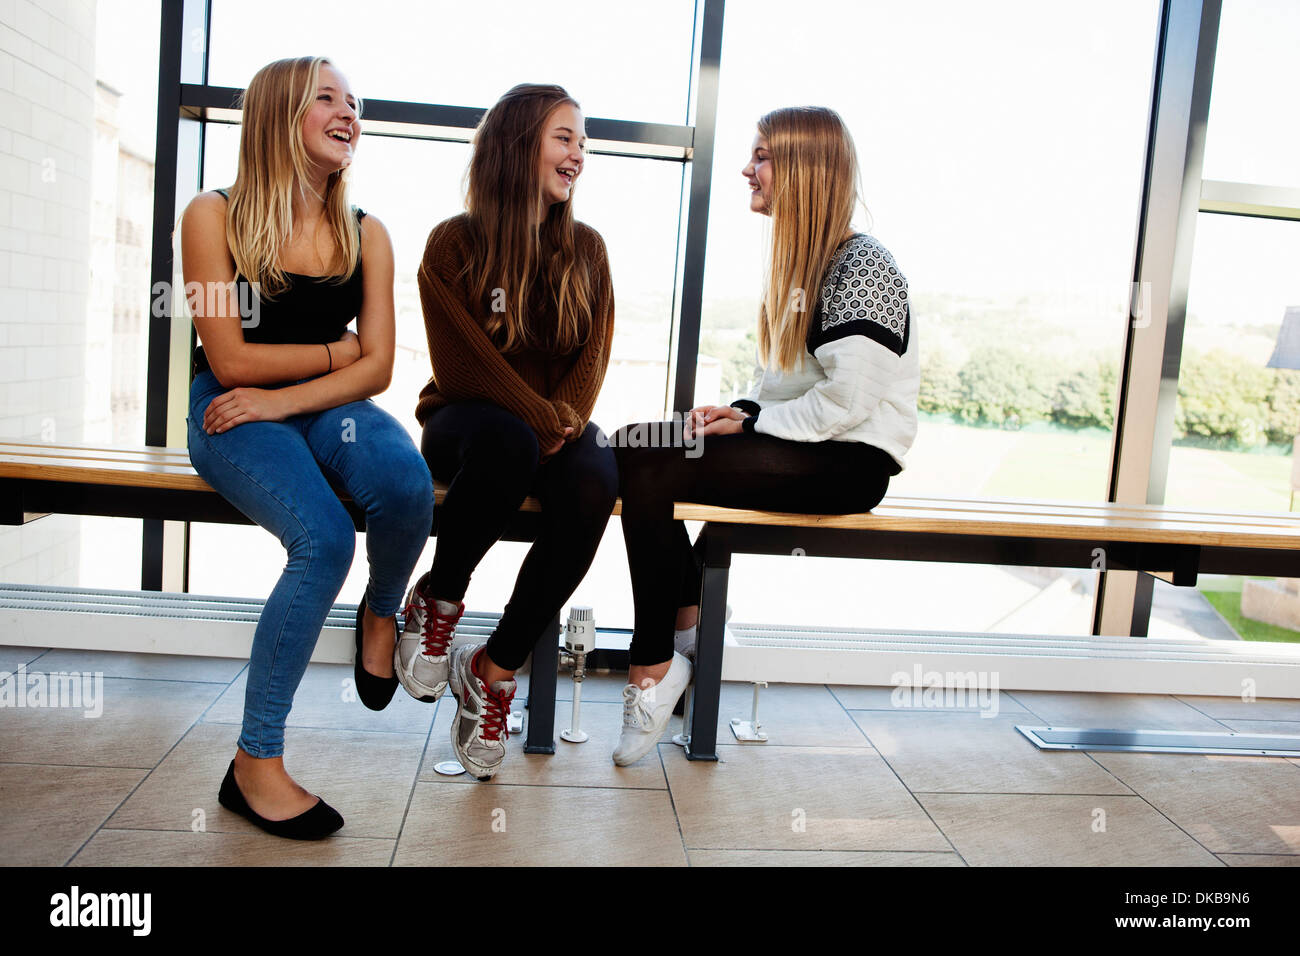 Trois écolières adolescentes sitting chatting in corridor Banque D'Images